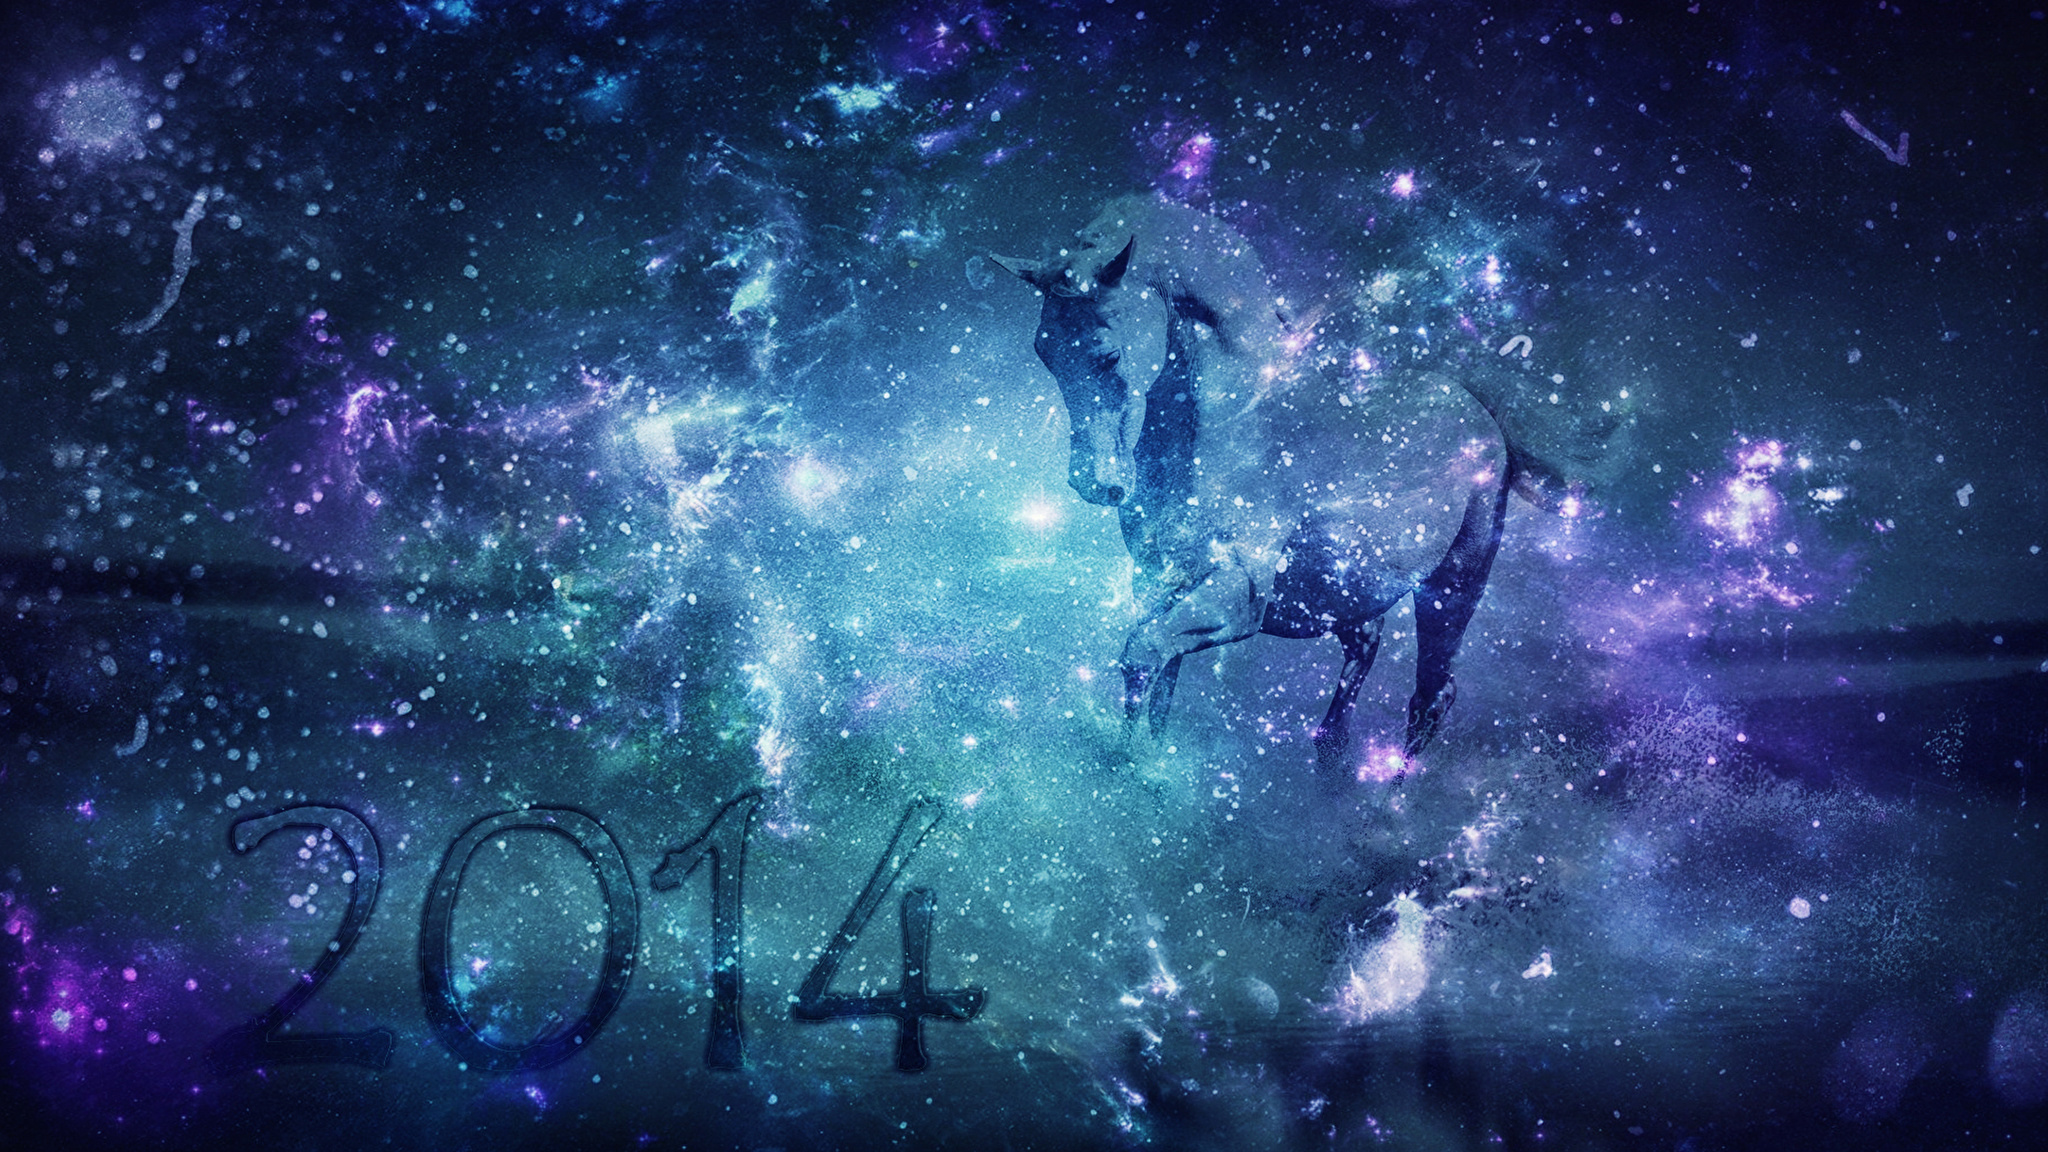 Картинки на обои 2024. Космос арт. Новый год в космосе. Обои космос. Лошадь на фоне космоса.